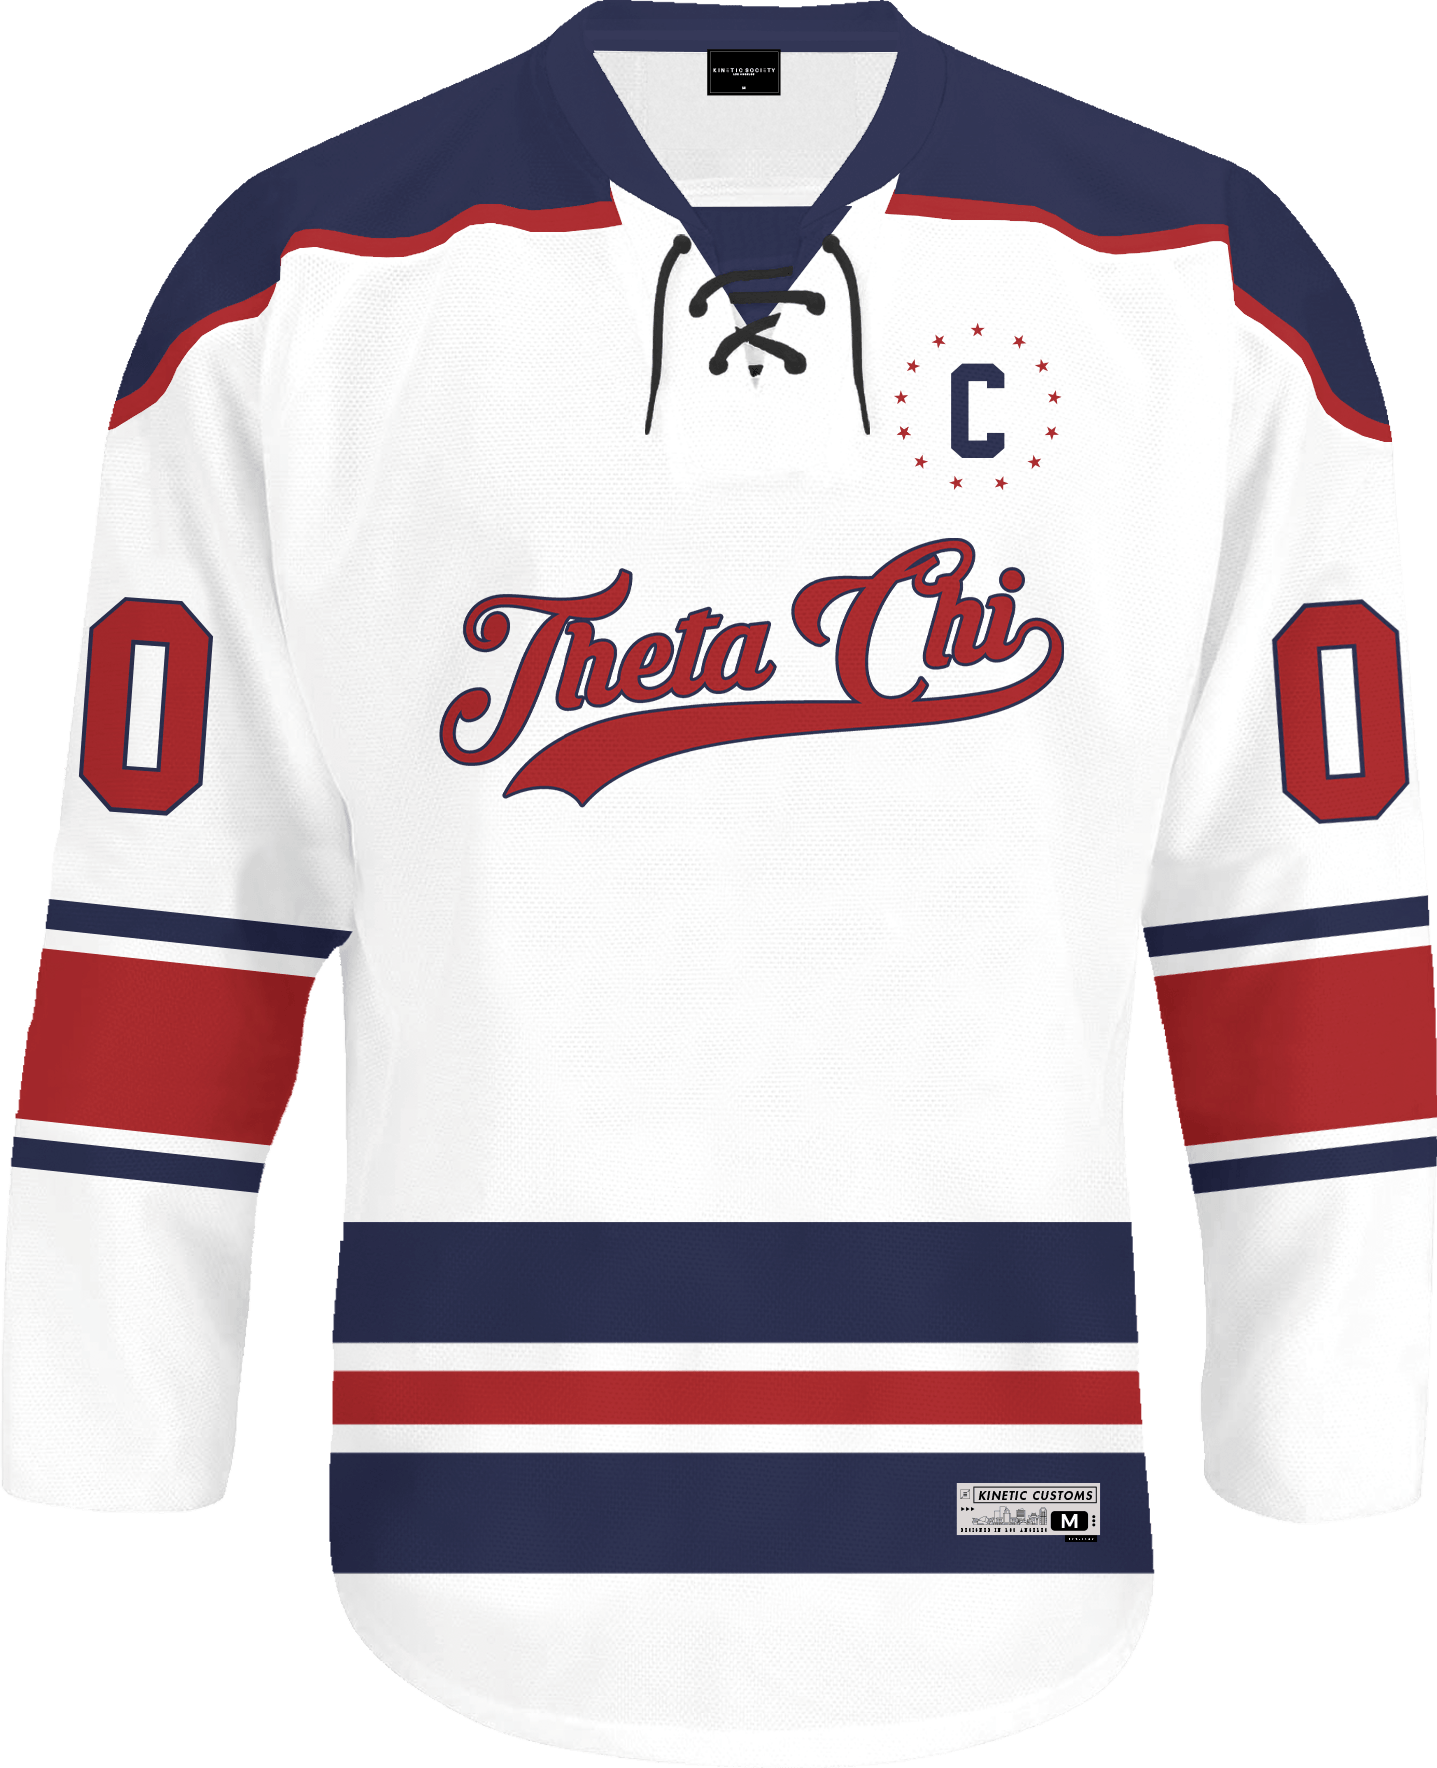 Theta Chi - Captain Hockey Jersey - Kinetic Society